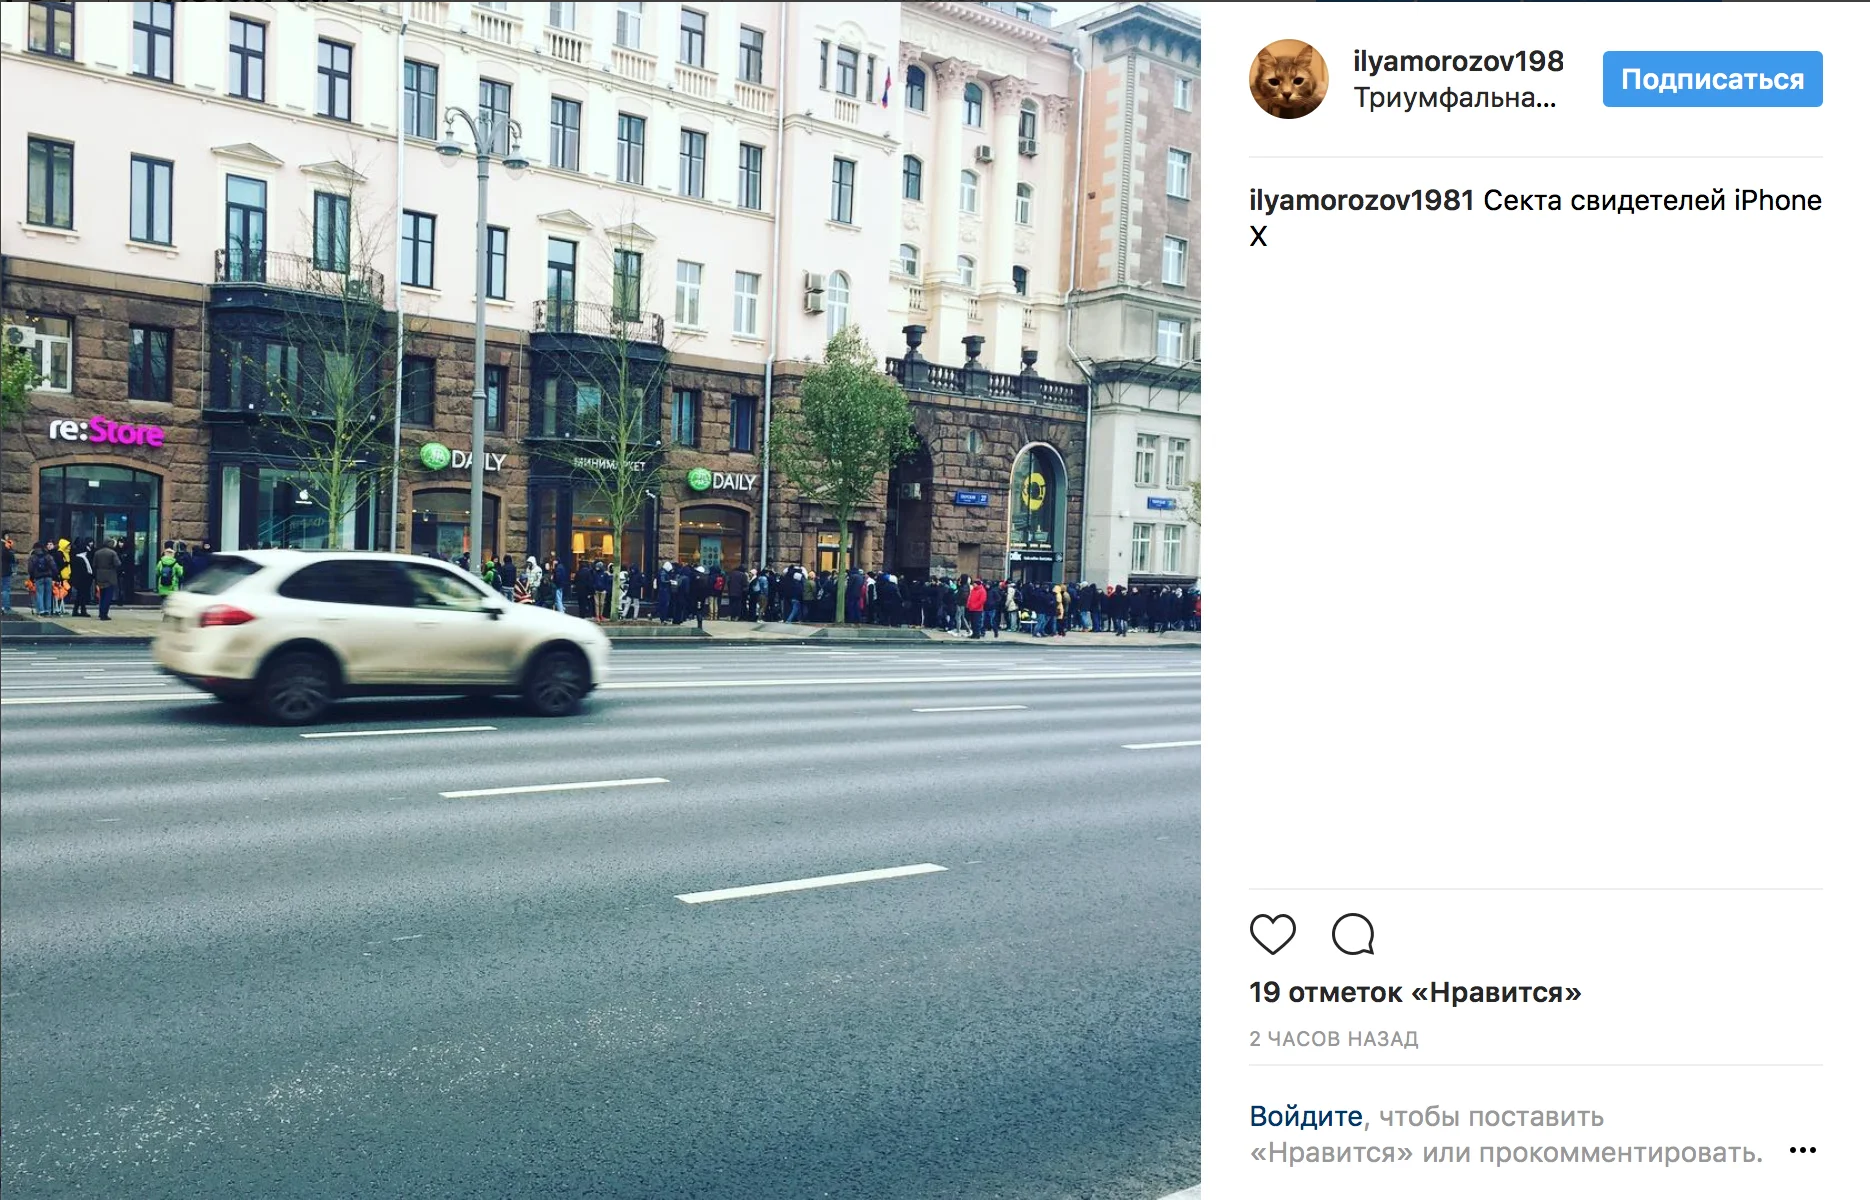 Жесть! Как выглядит очередь за iPhone X в Москве? - фото 1